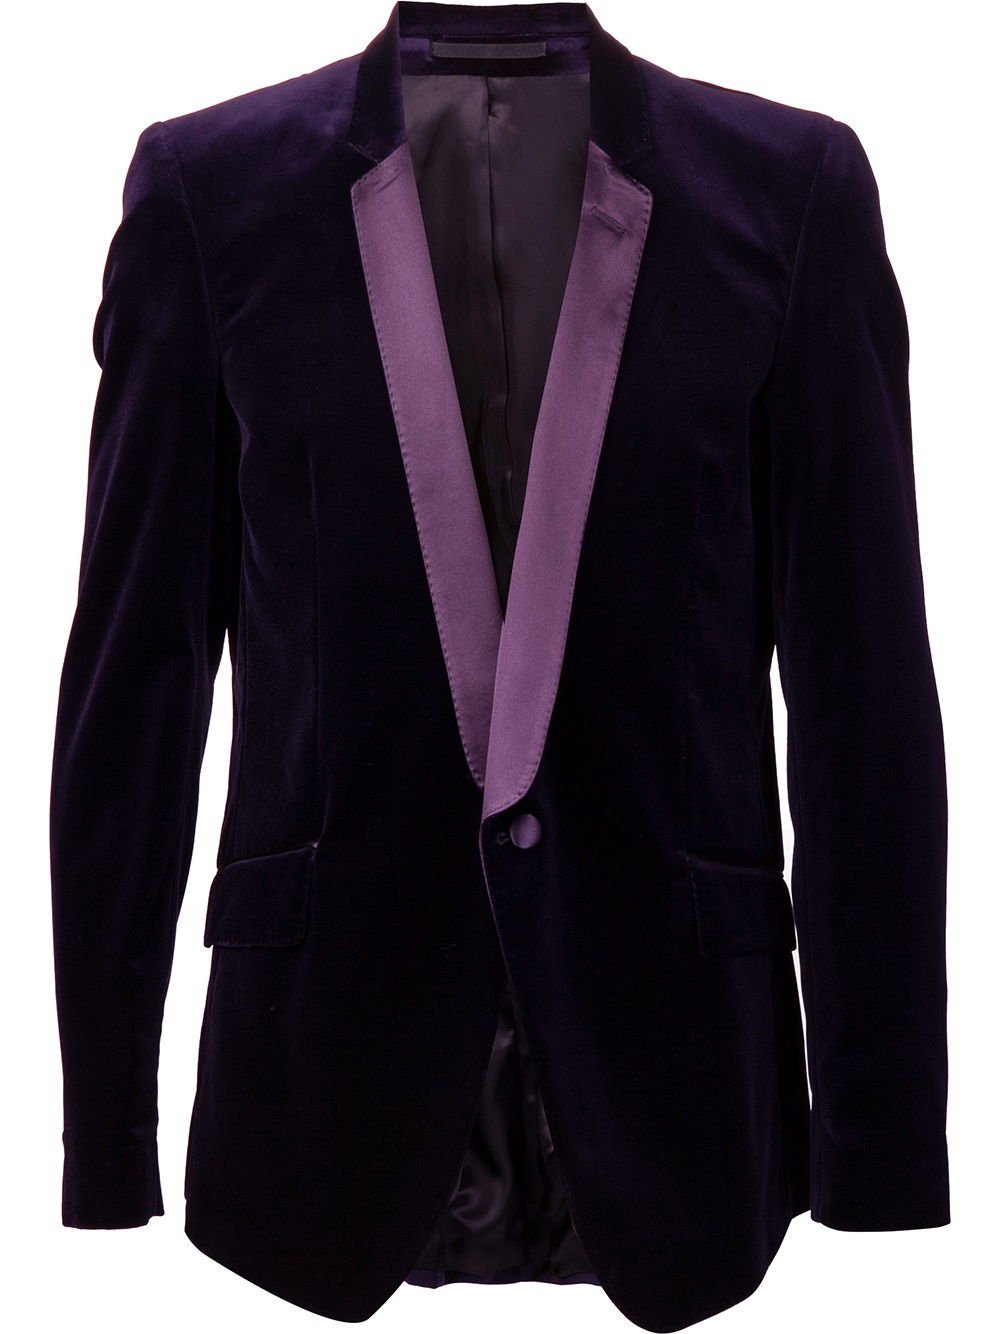 Lyst - Les Hommes Velvet Design Suit in Purple for Men